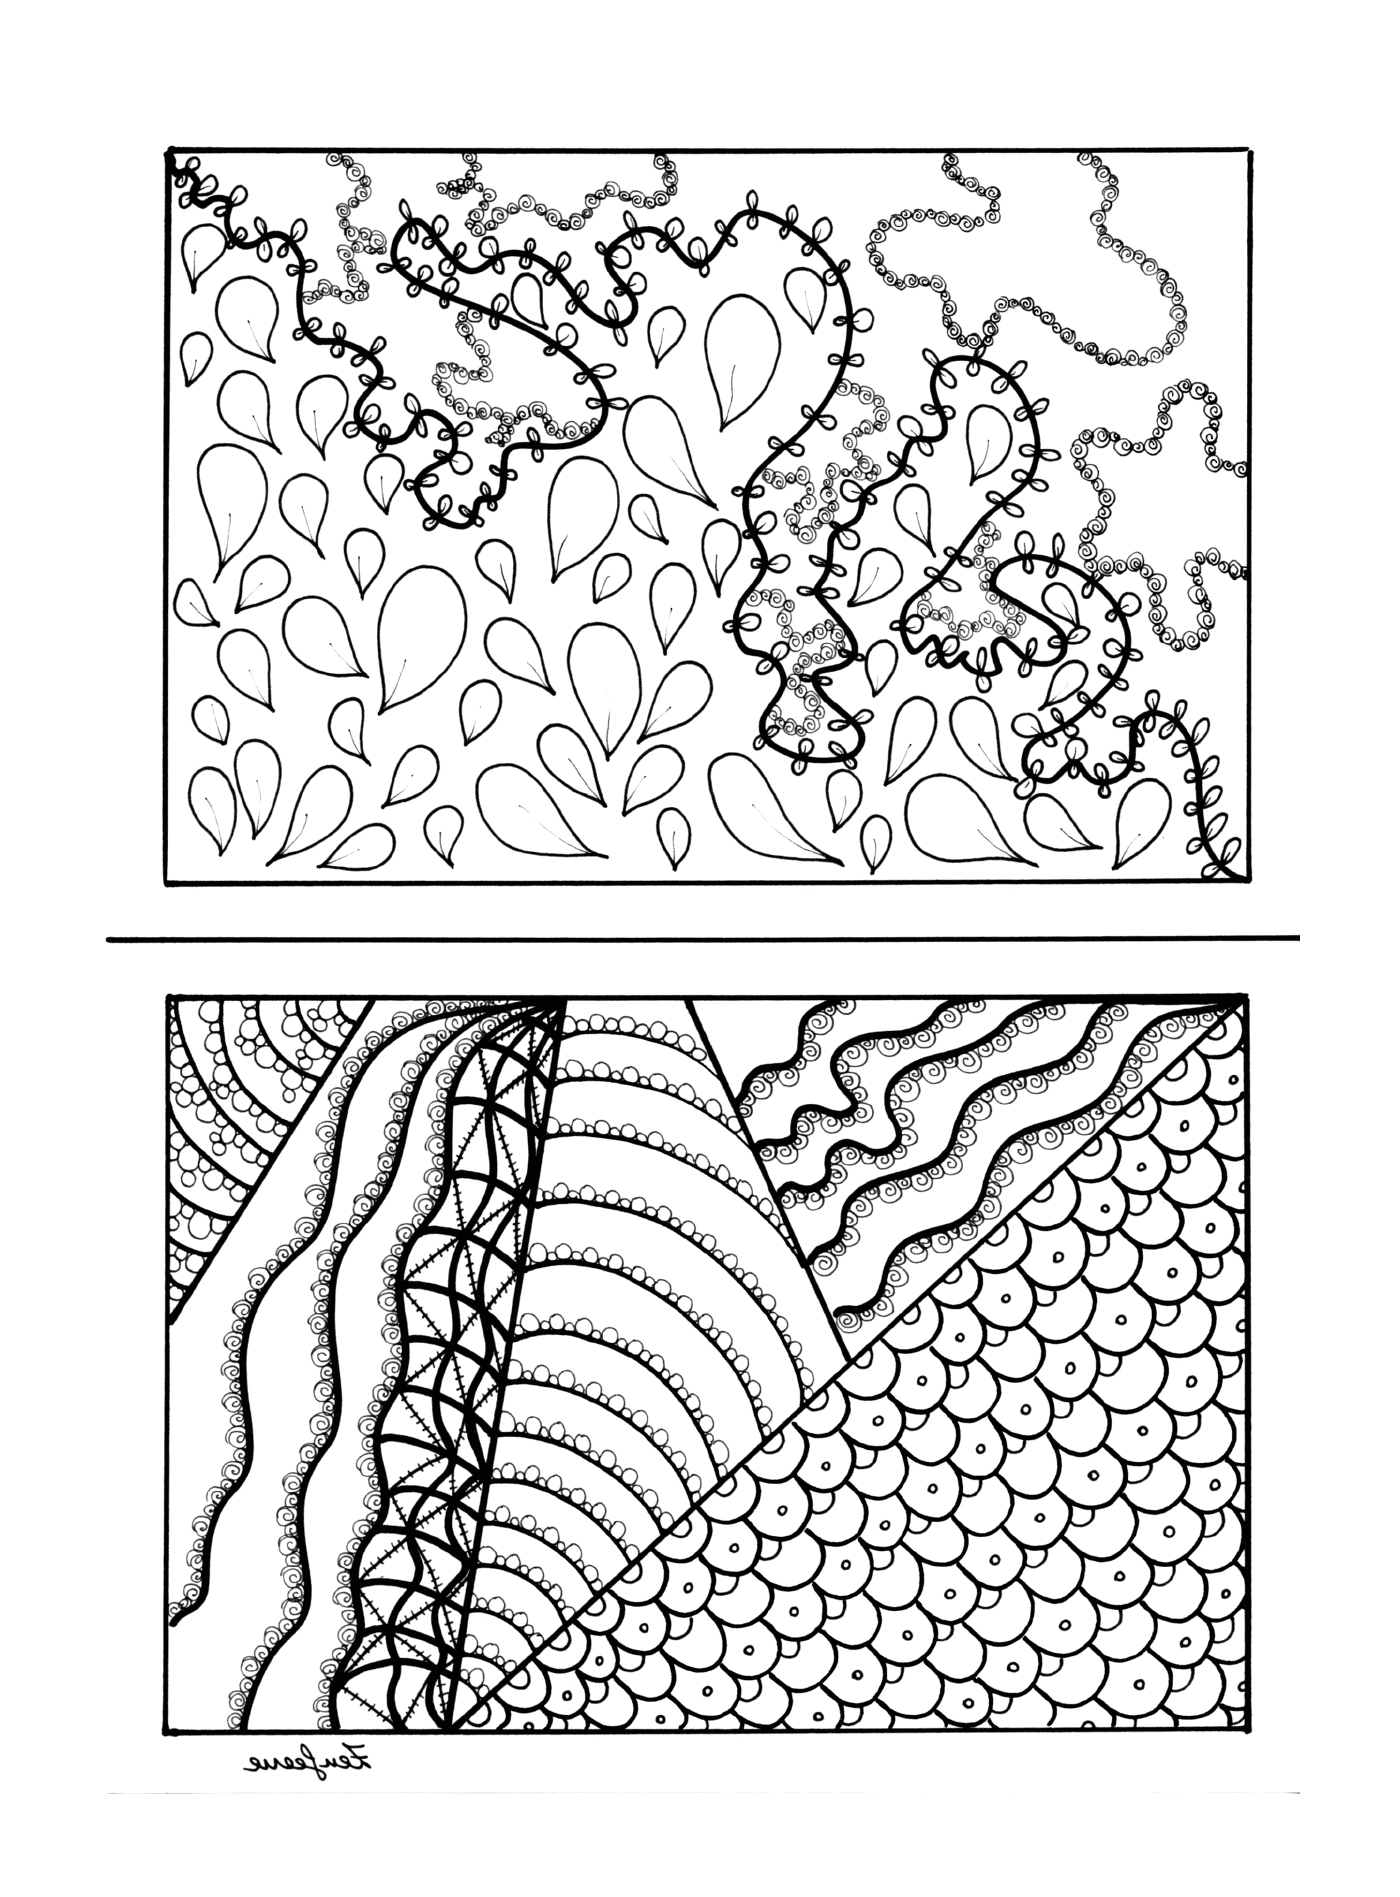  Dibujos en blanco y negro de una planta y una torre de agua 